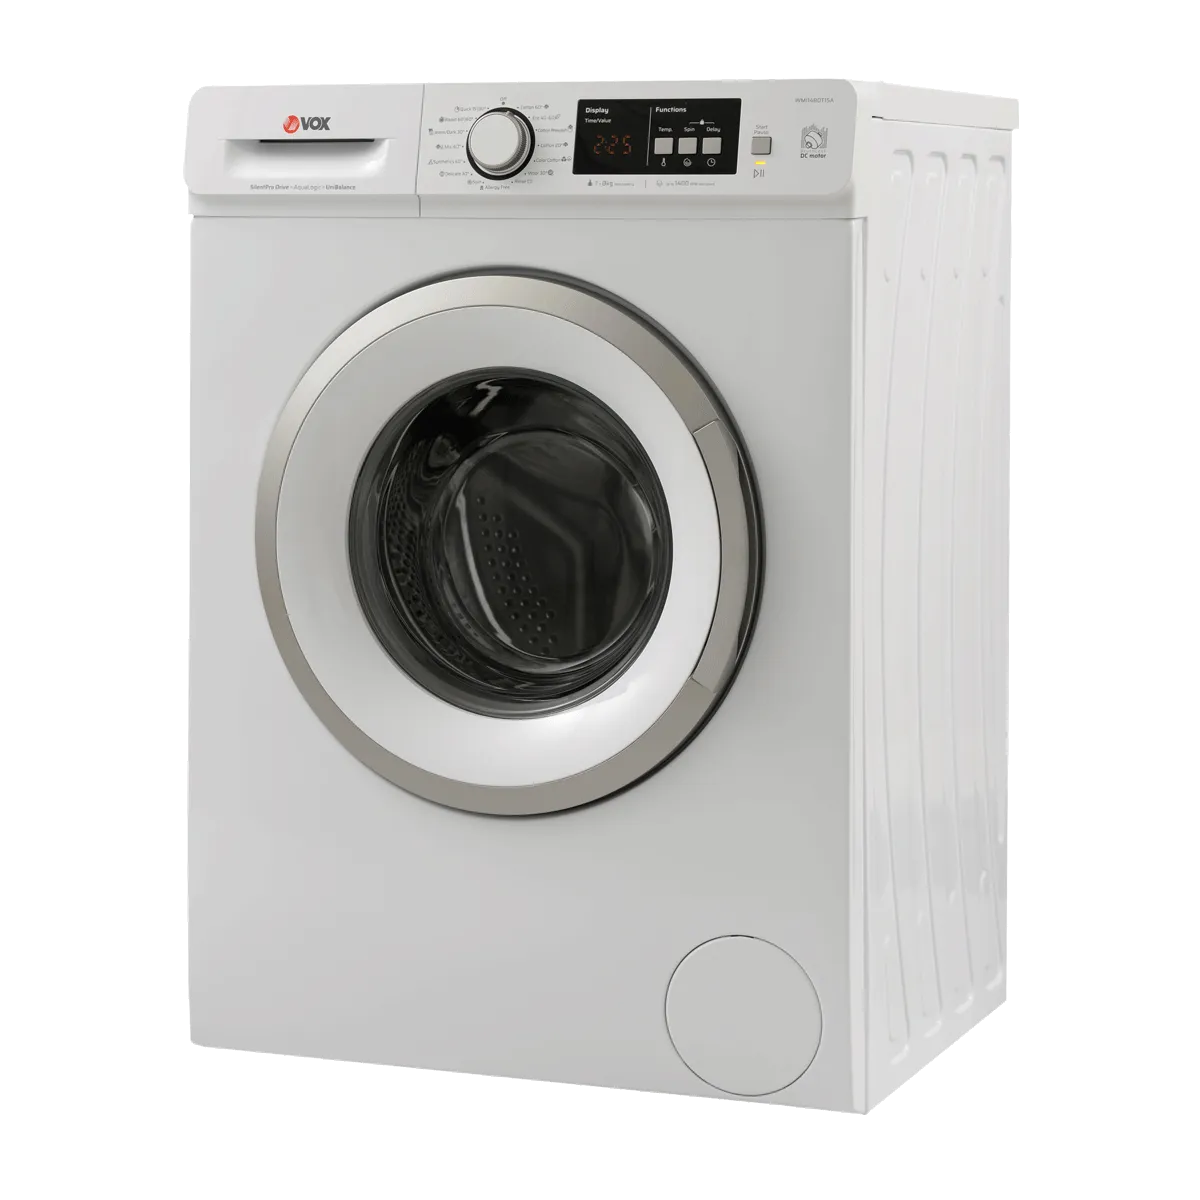 Машина за перење алишта WMI1480-T15A 